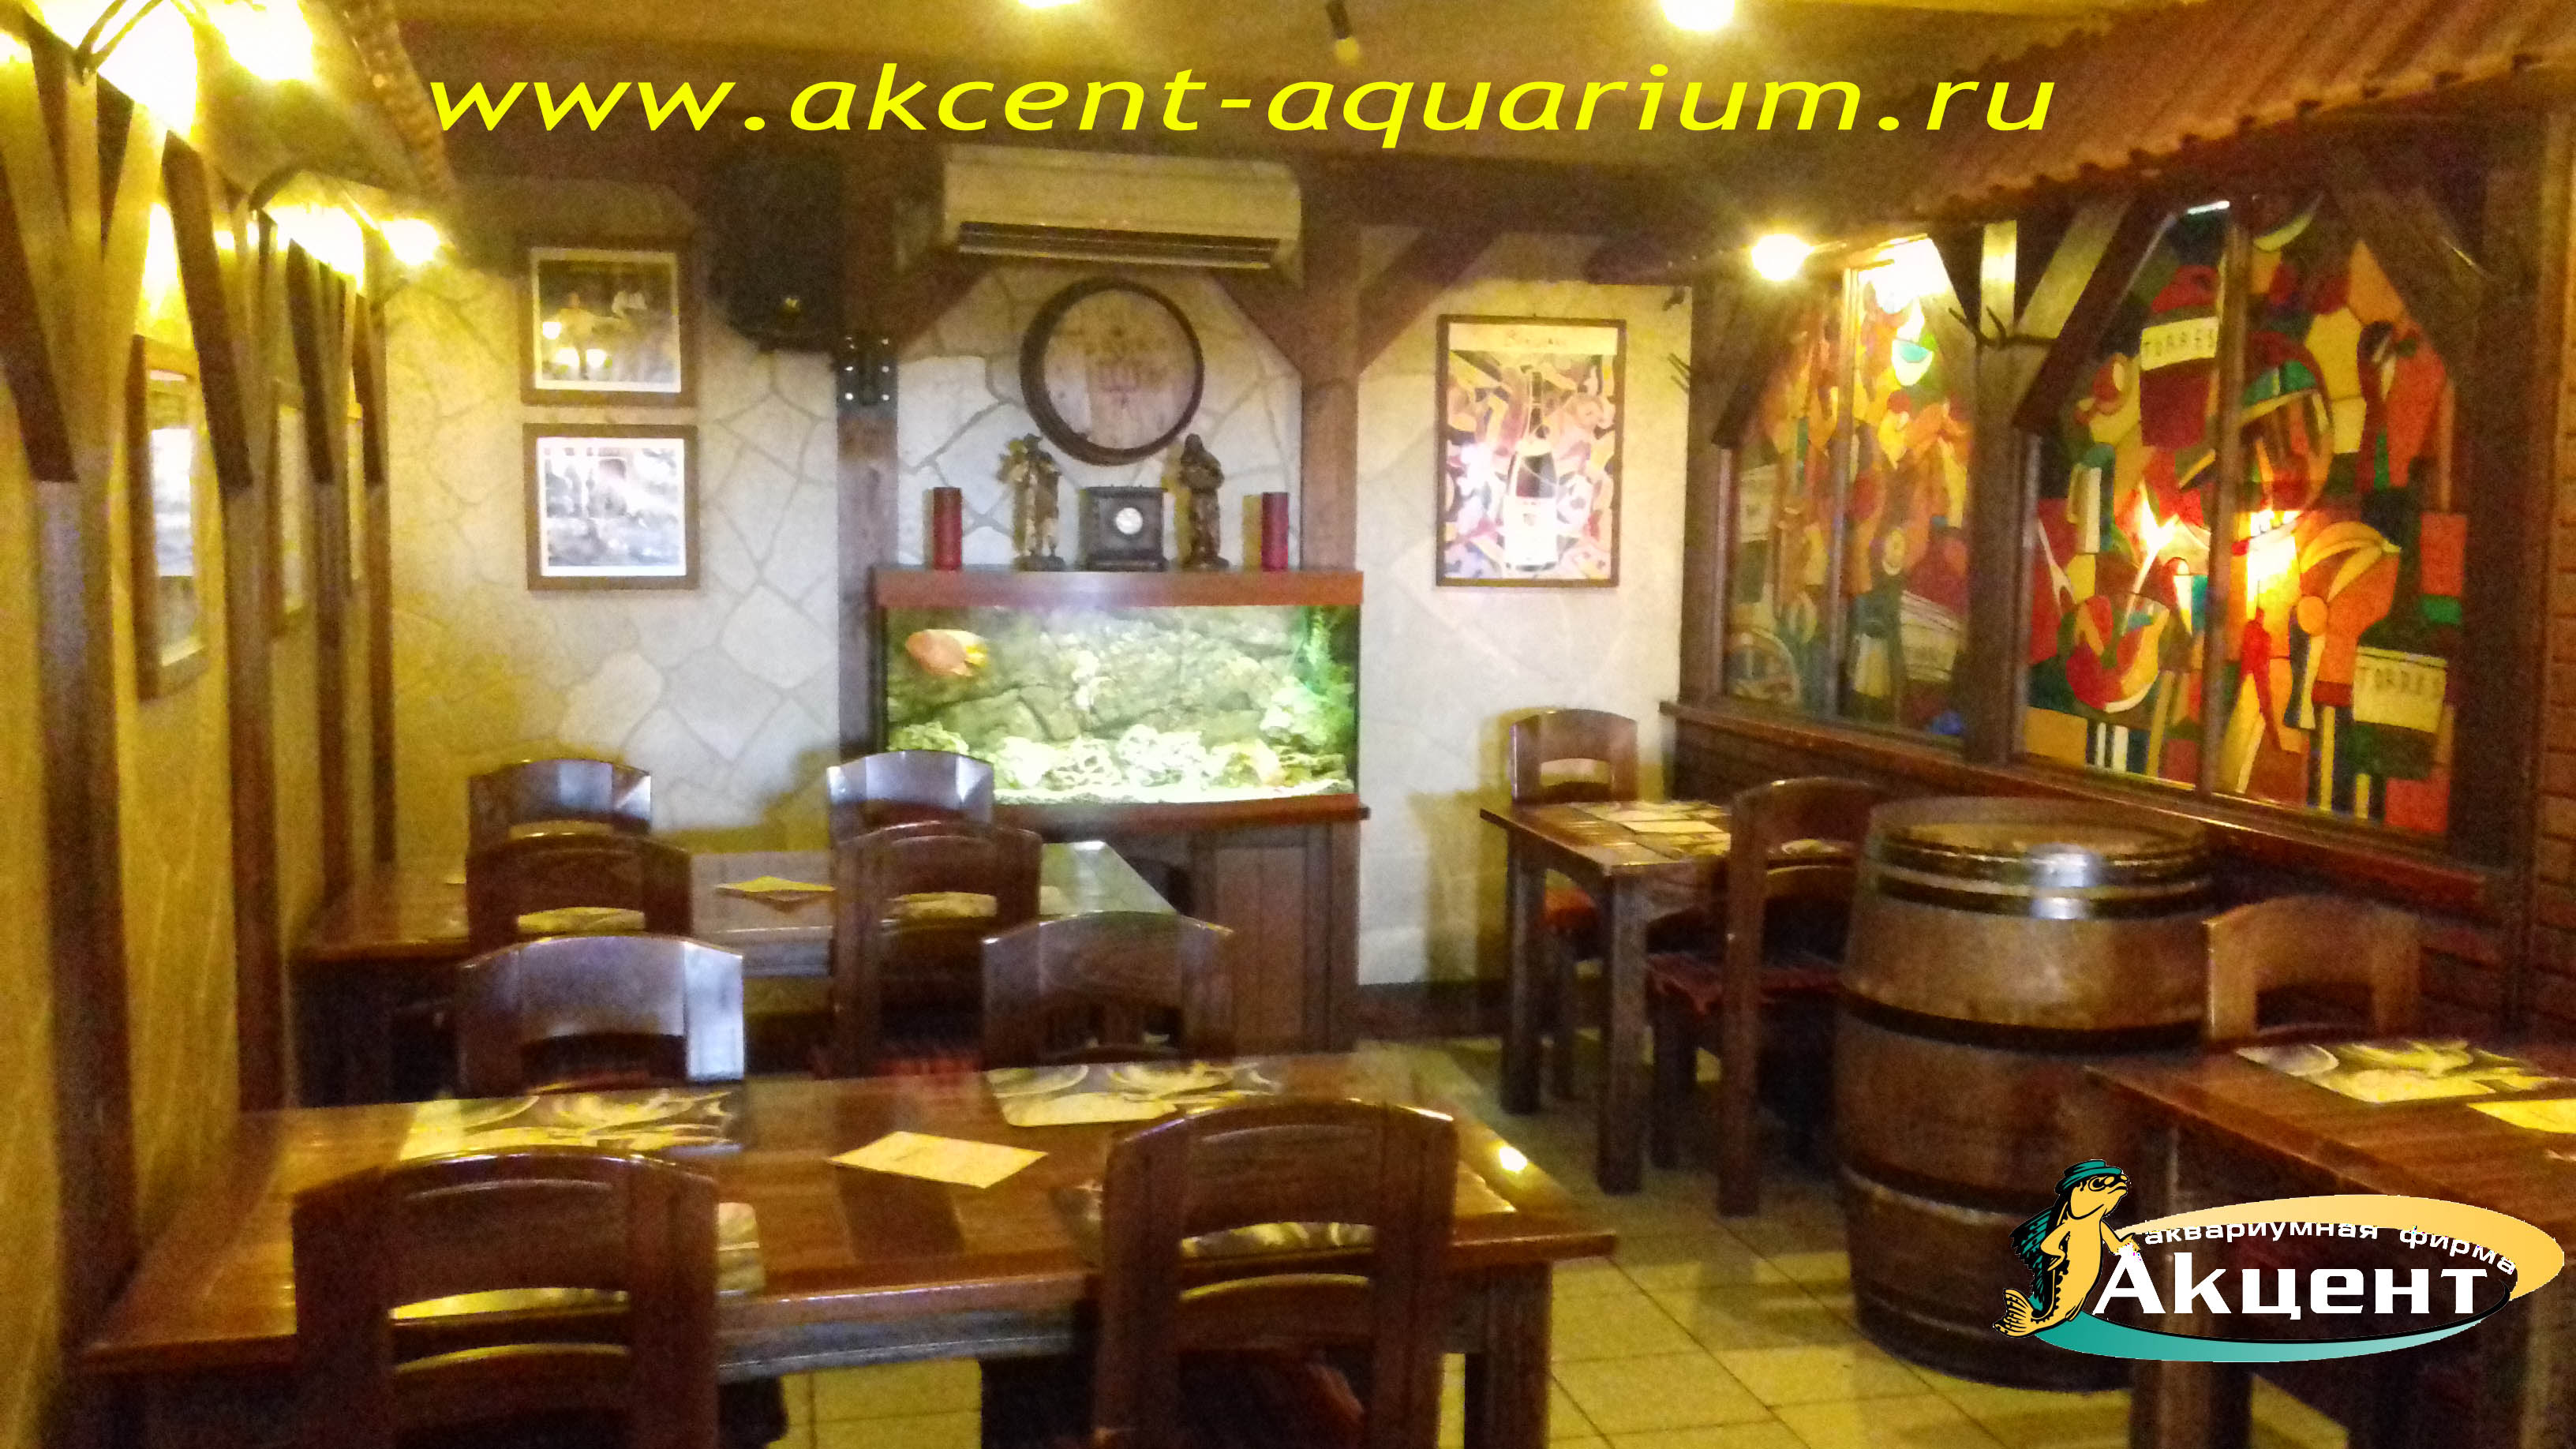 Акцент-аквариум, аквариум 240 литров с гнутым передним стеклом, ресторан